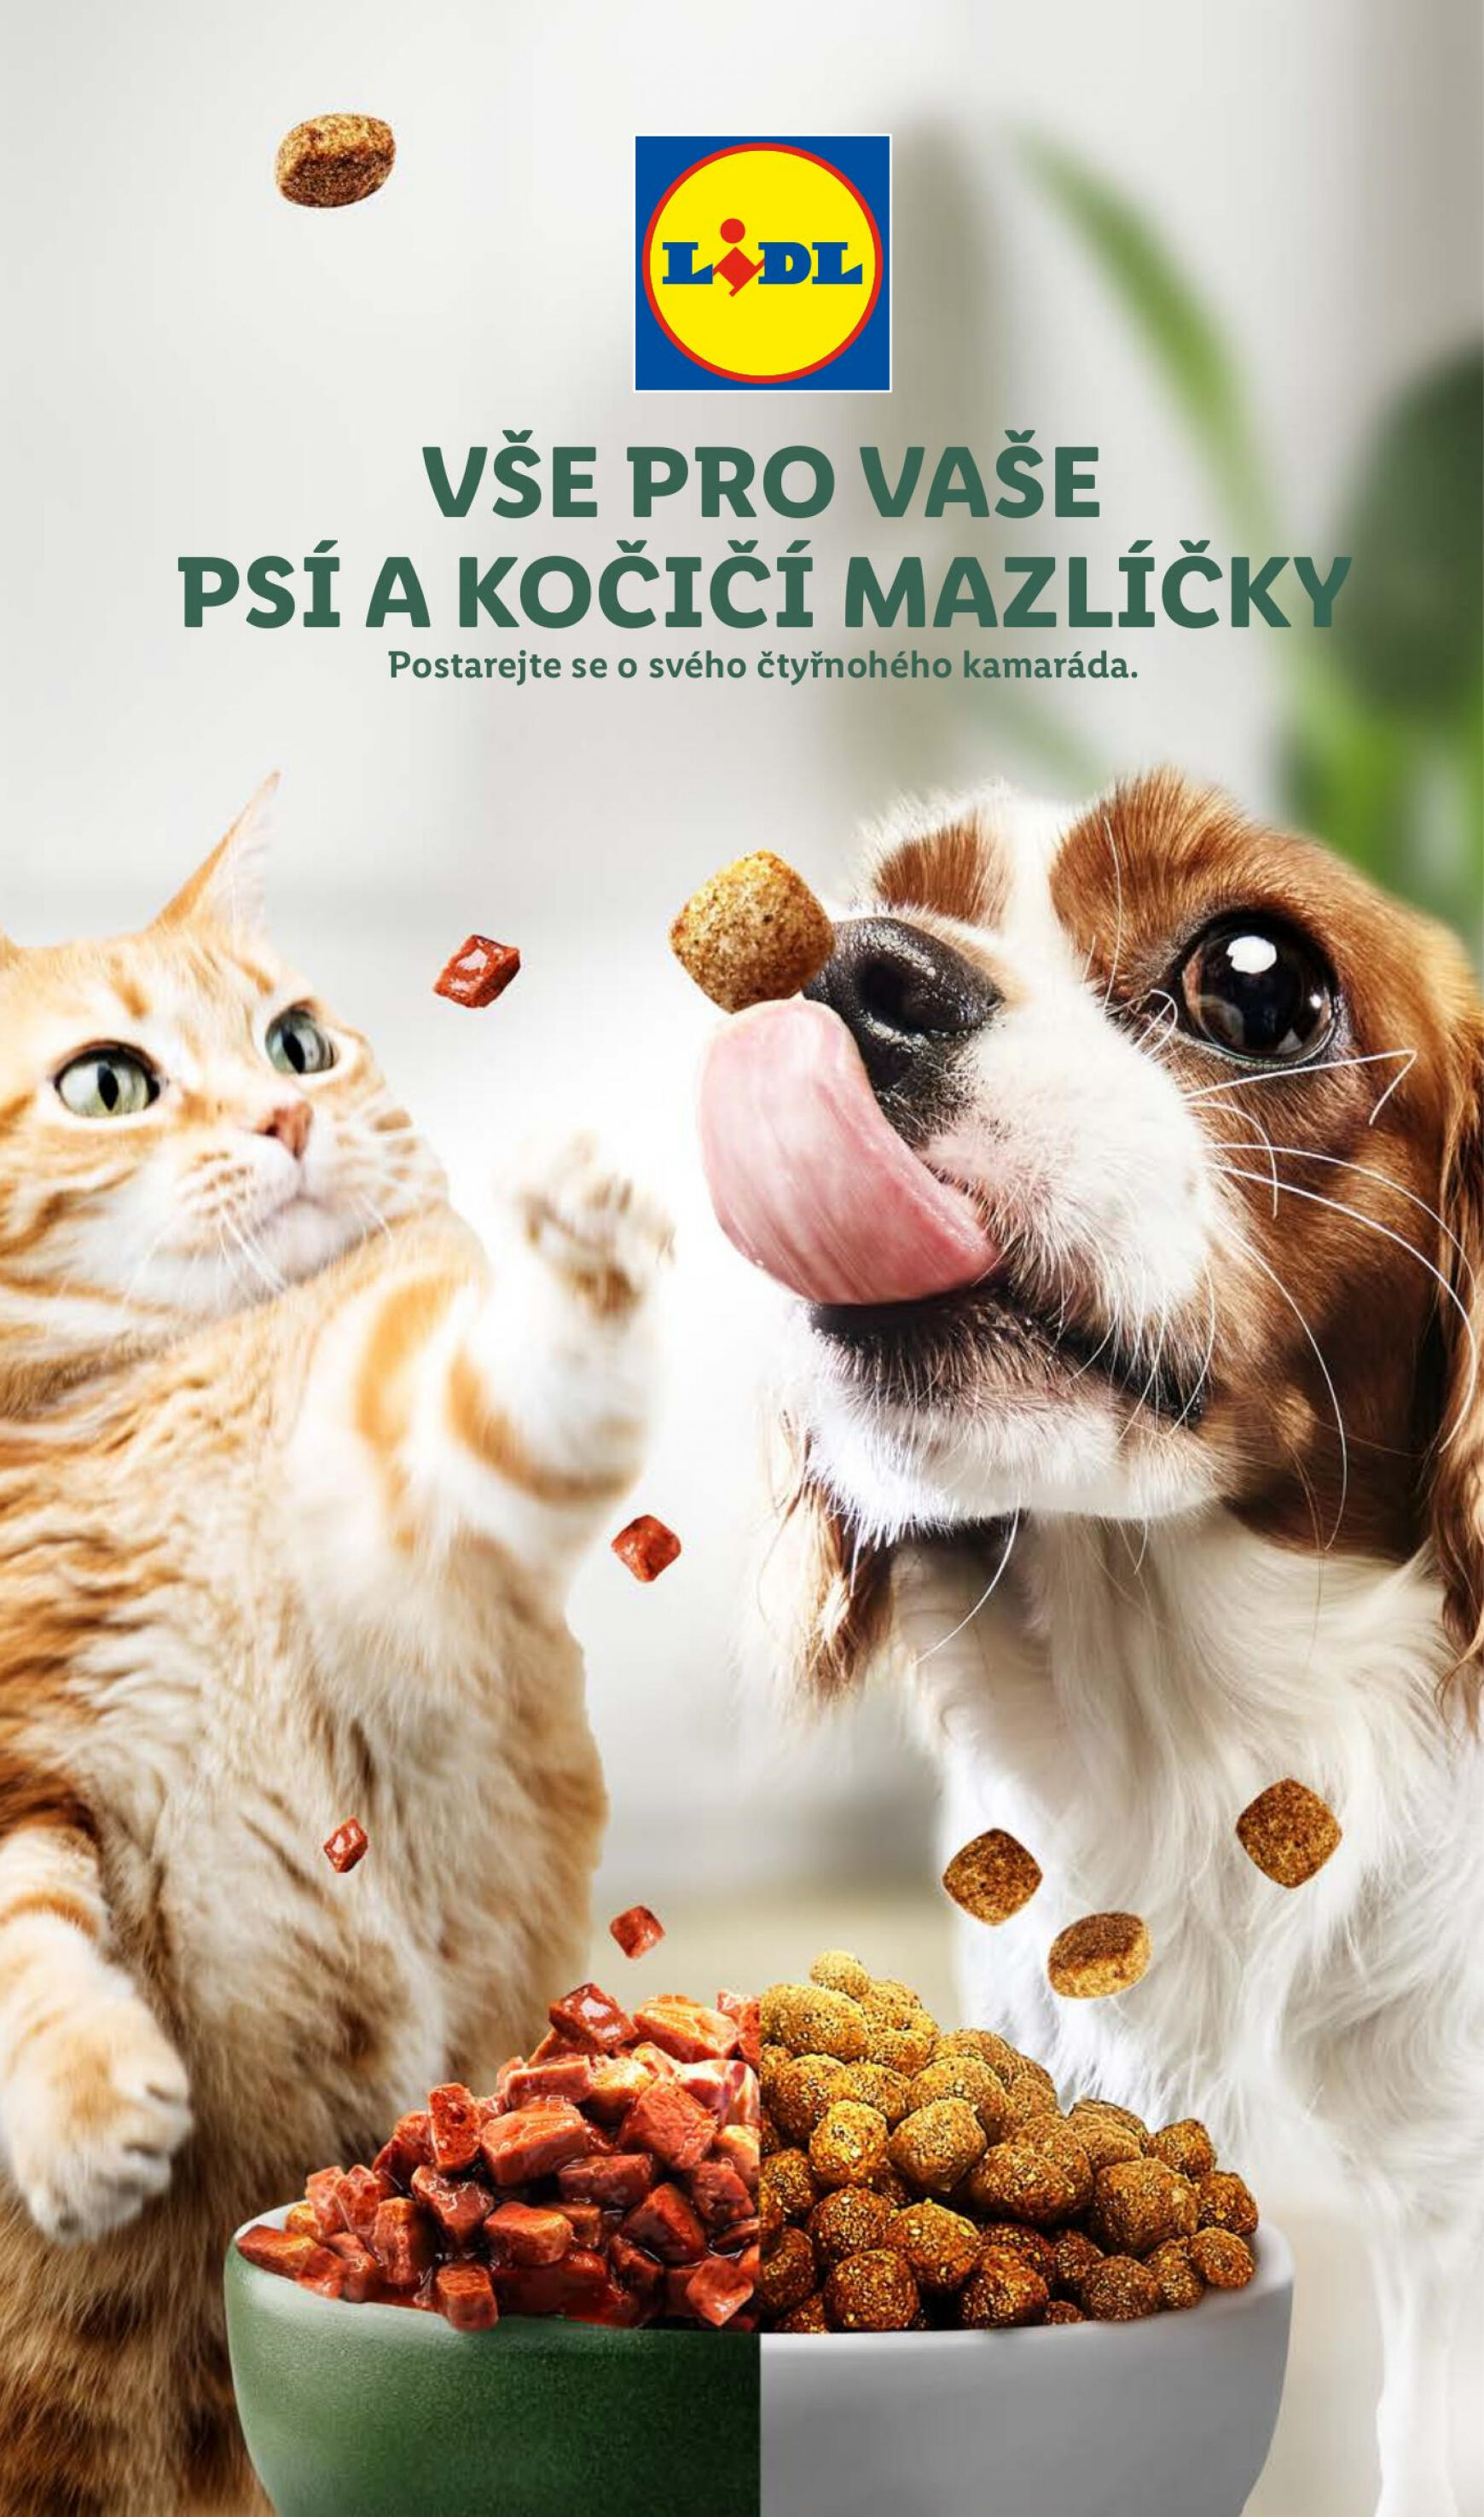 lidl - Leták Lidl - Vše pro vaše psí a kočičí mazlíčky aktuální 23.05. - 26.05.